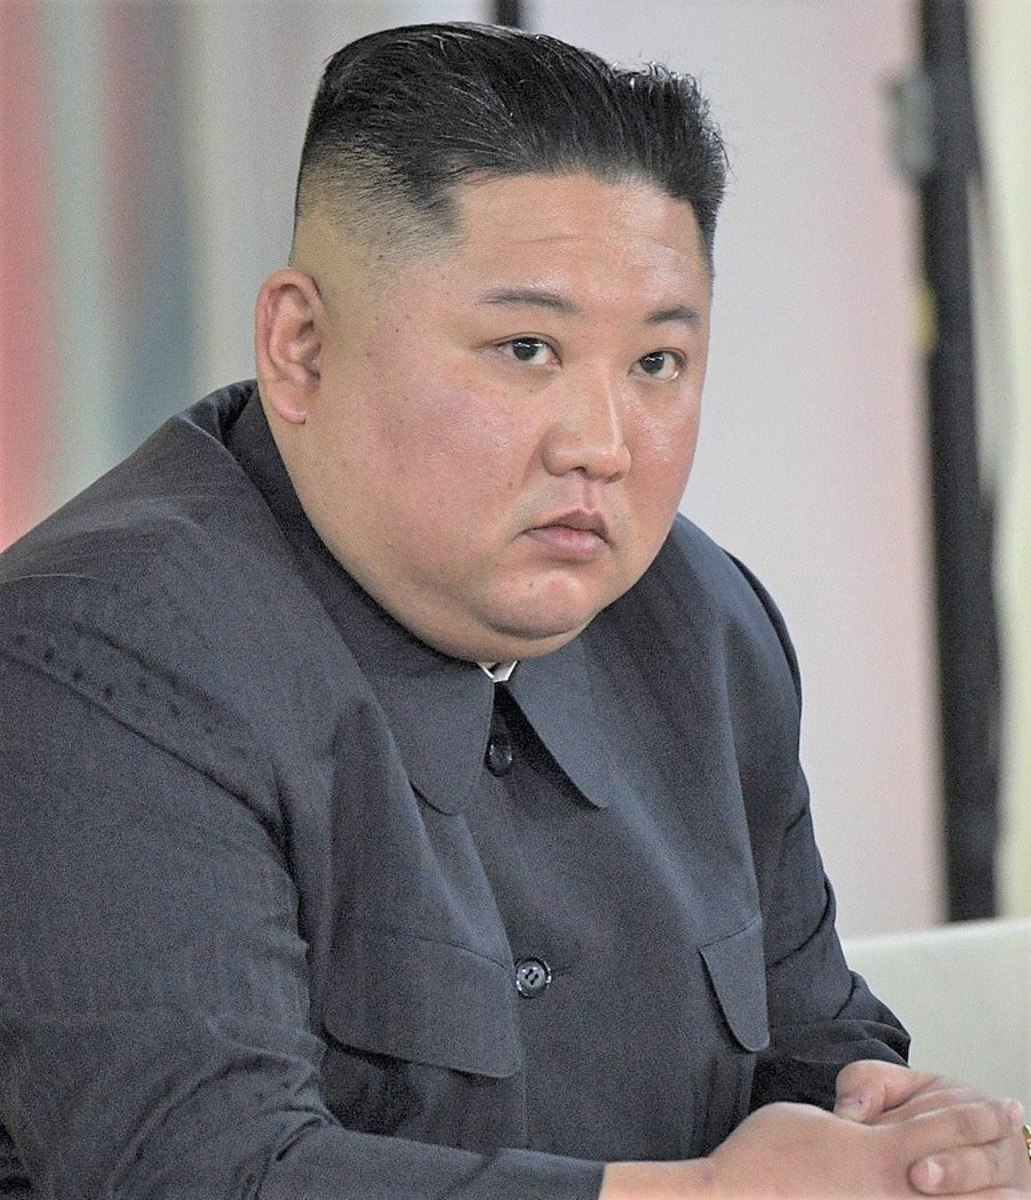 Kim Jong-un; what a hunk.